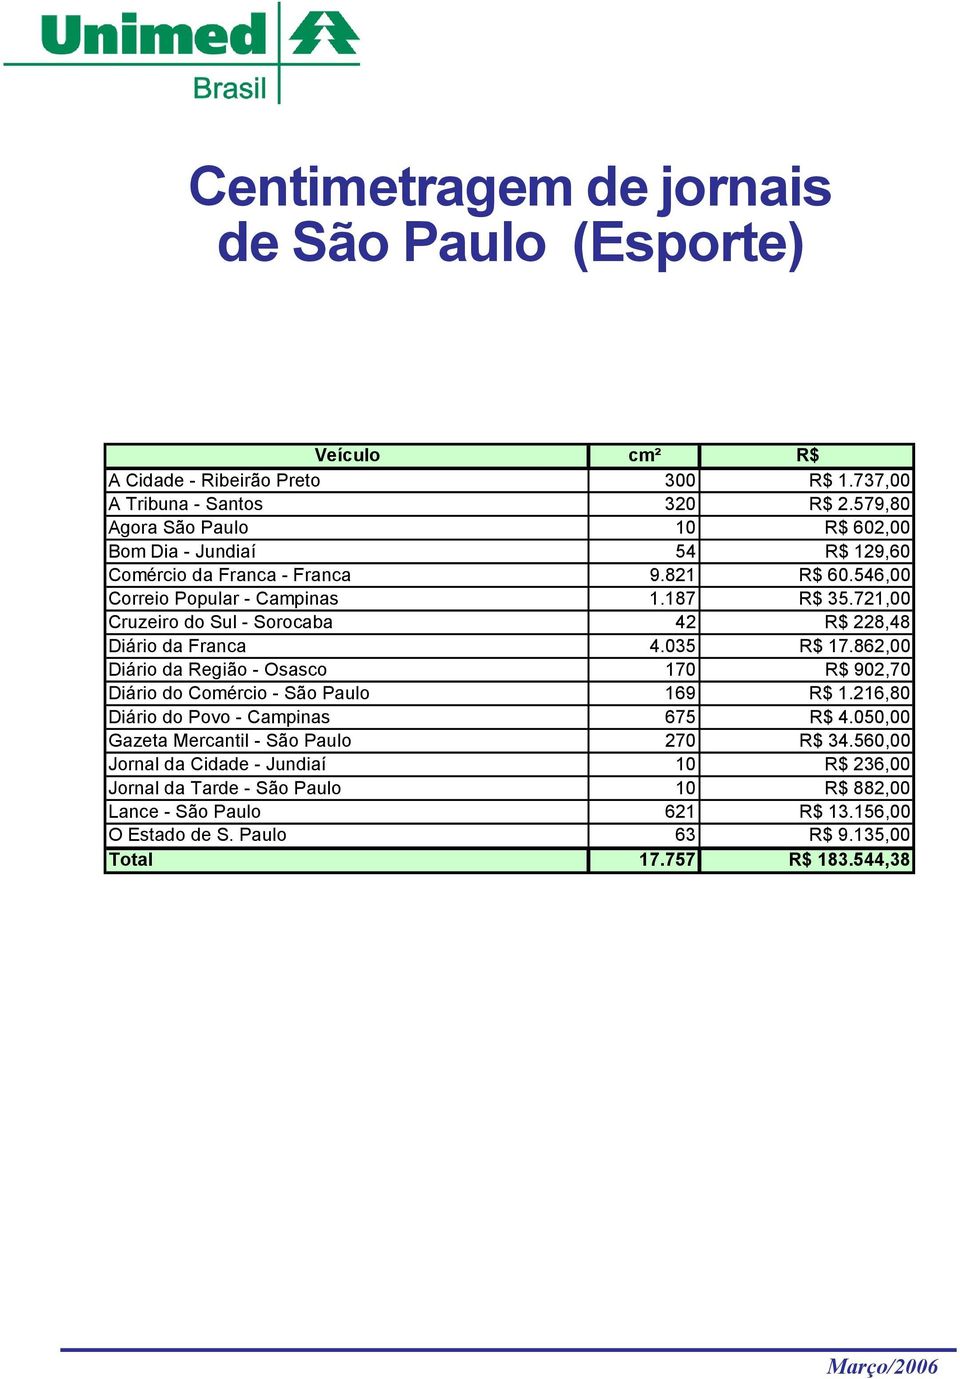 721,00 Cruzeiro do Sul - Sorocaba 42 R$ 228,48 Diário da Franca 4.035 R$ 17.862,00 Diário da Região - Osasco 170 R$ 902,70 Diário do Comércio - São Paulo 169 R$ 1.